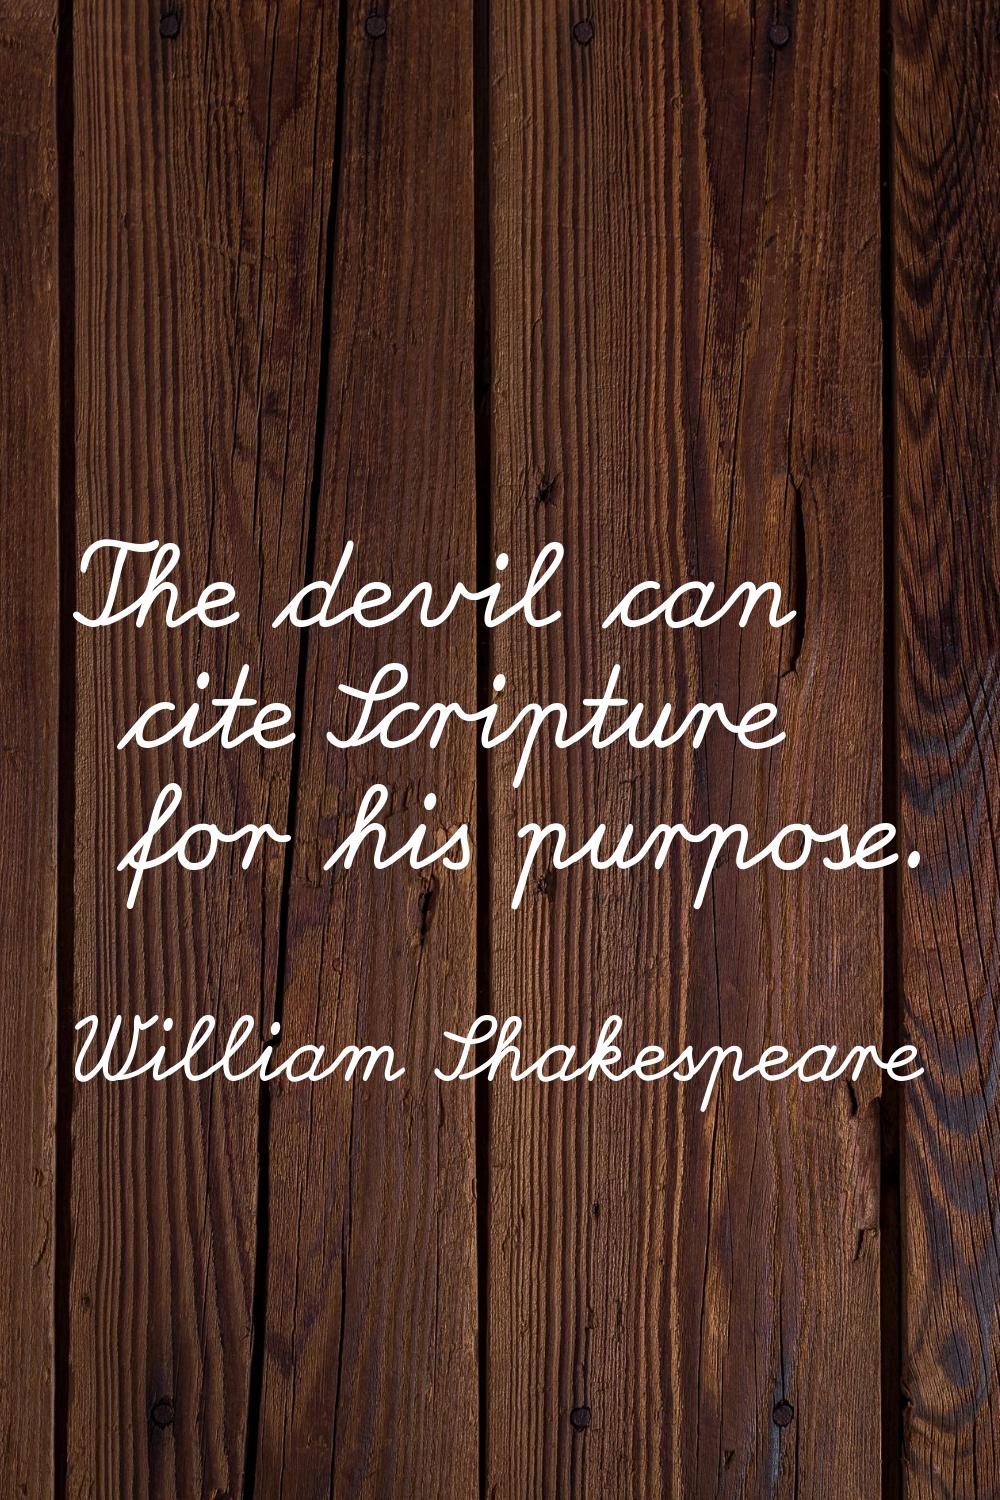 The devil can cite Scripture for his purpose.